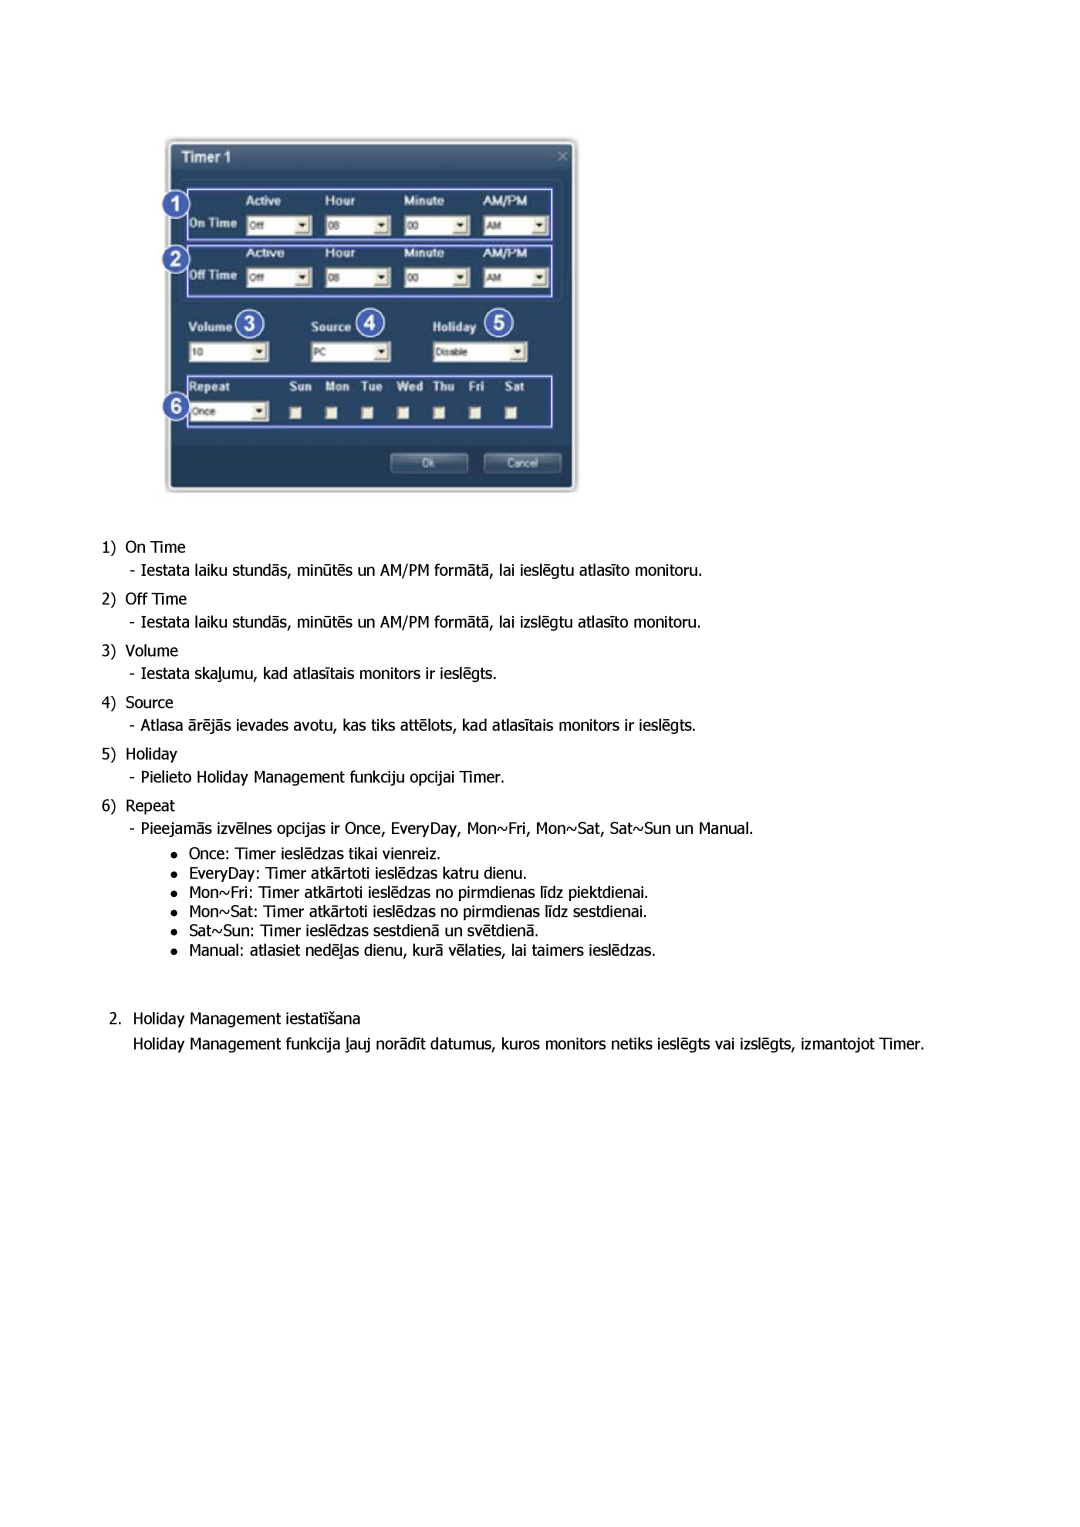 Samsung PH50KPPLBF/EN manual On Time, Off Time, Volume Iestata skaļumu, kad atlasītais monitors ir ieslēgts, Source 